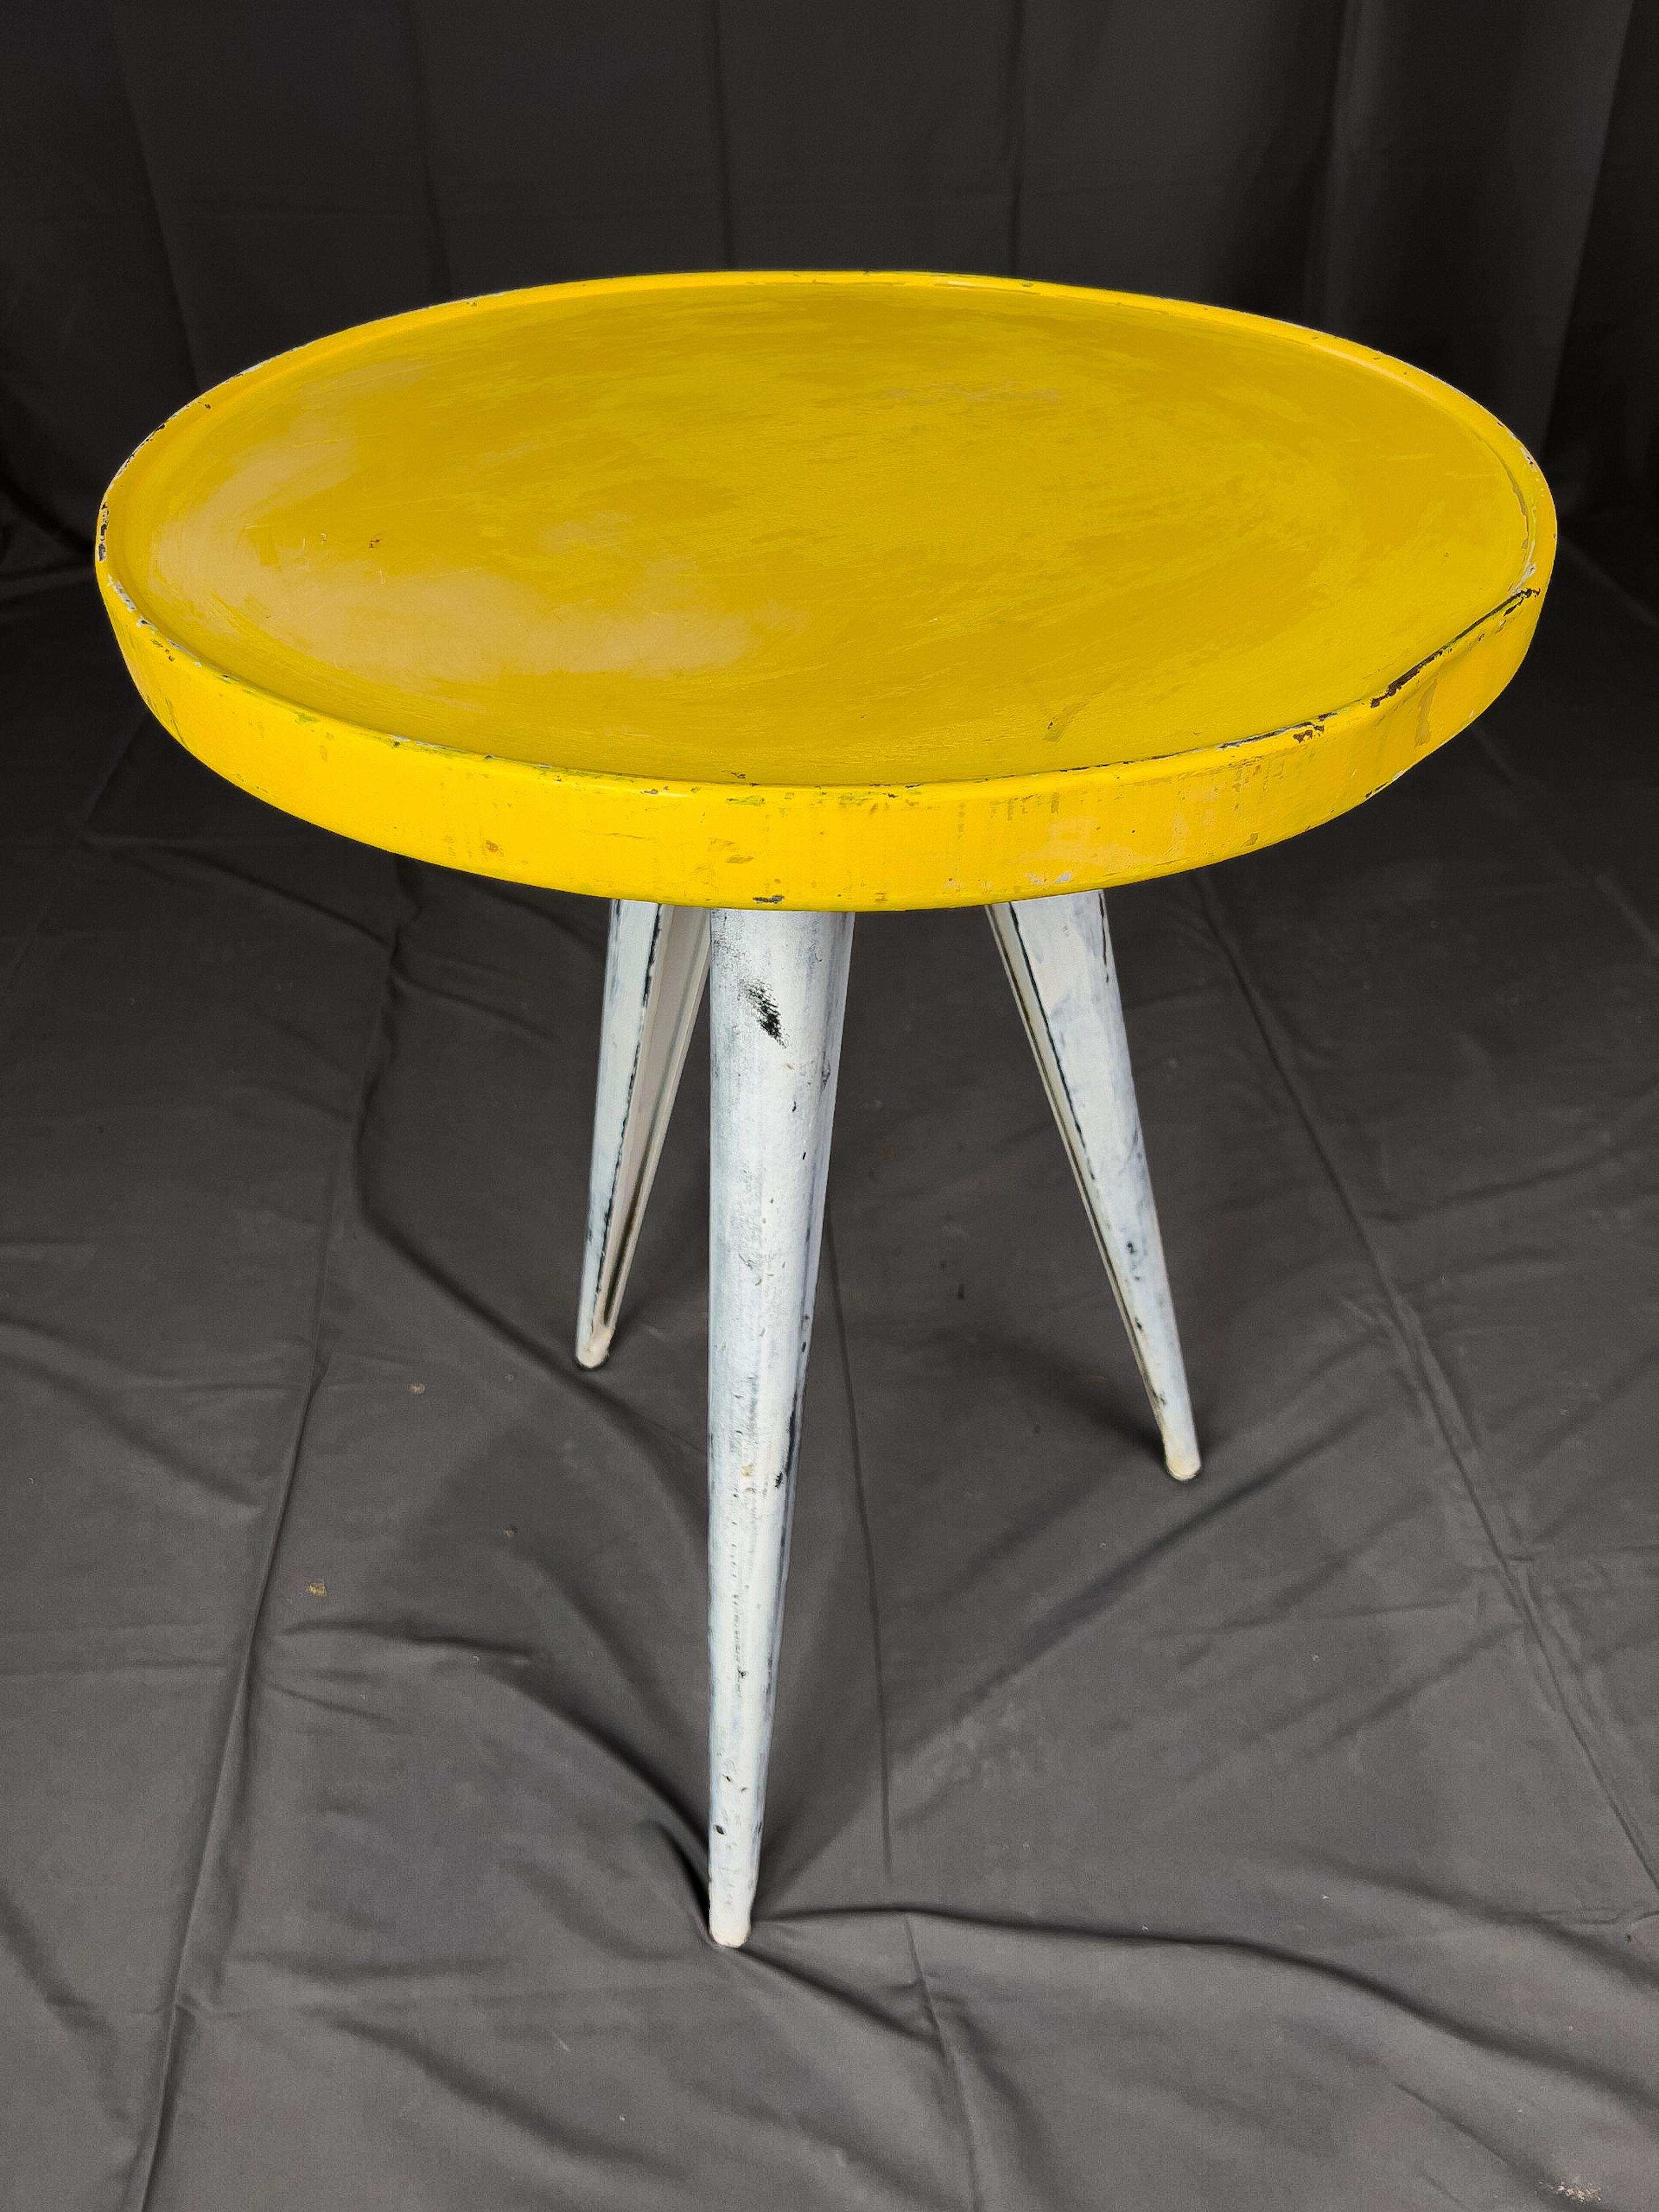 französische Bistrotische aus den 1960er Jahren mit leuchtend gelber runder Platte und drei schrägen Beinen.